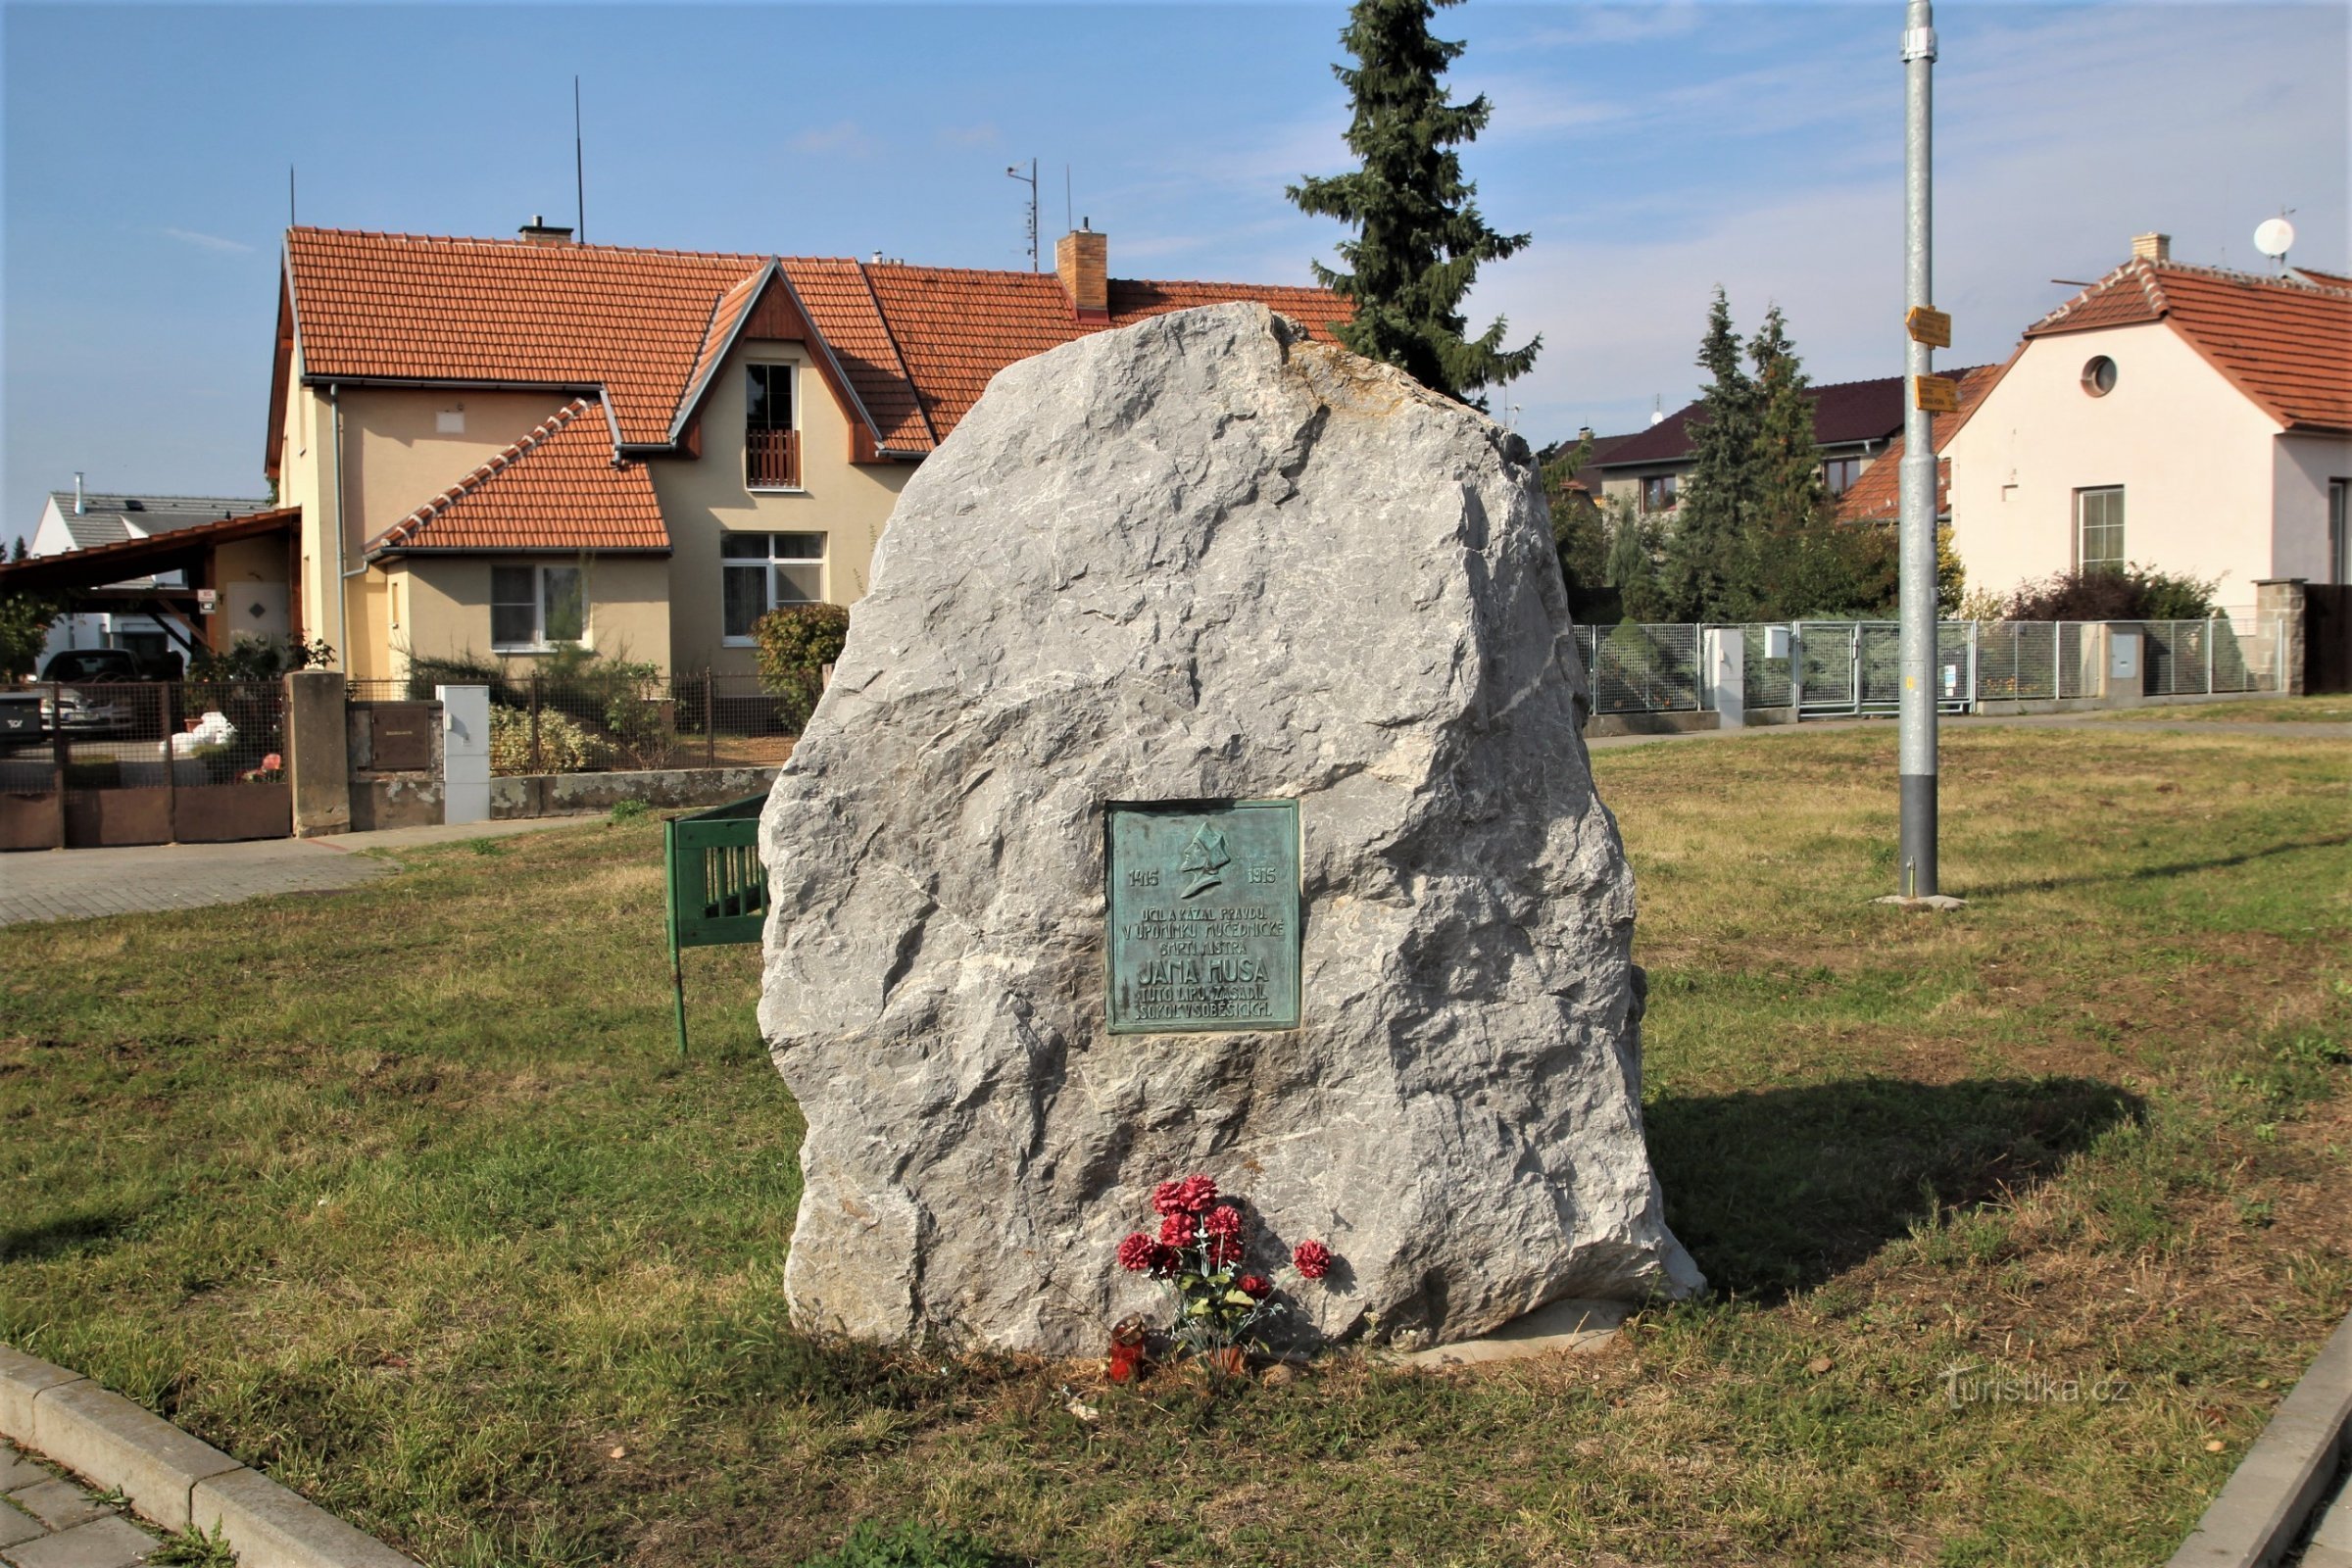 Commemorative plaque of Master Jan Hus